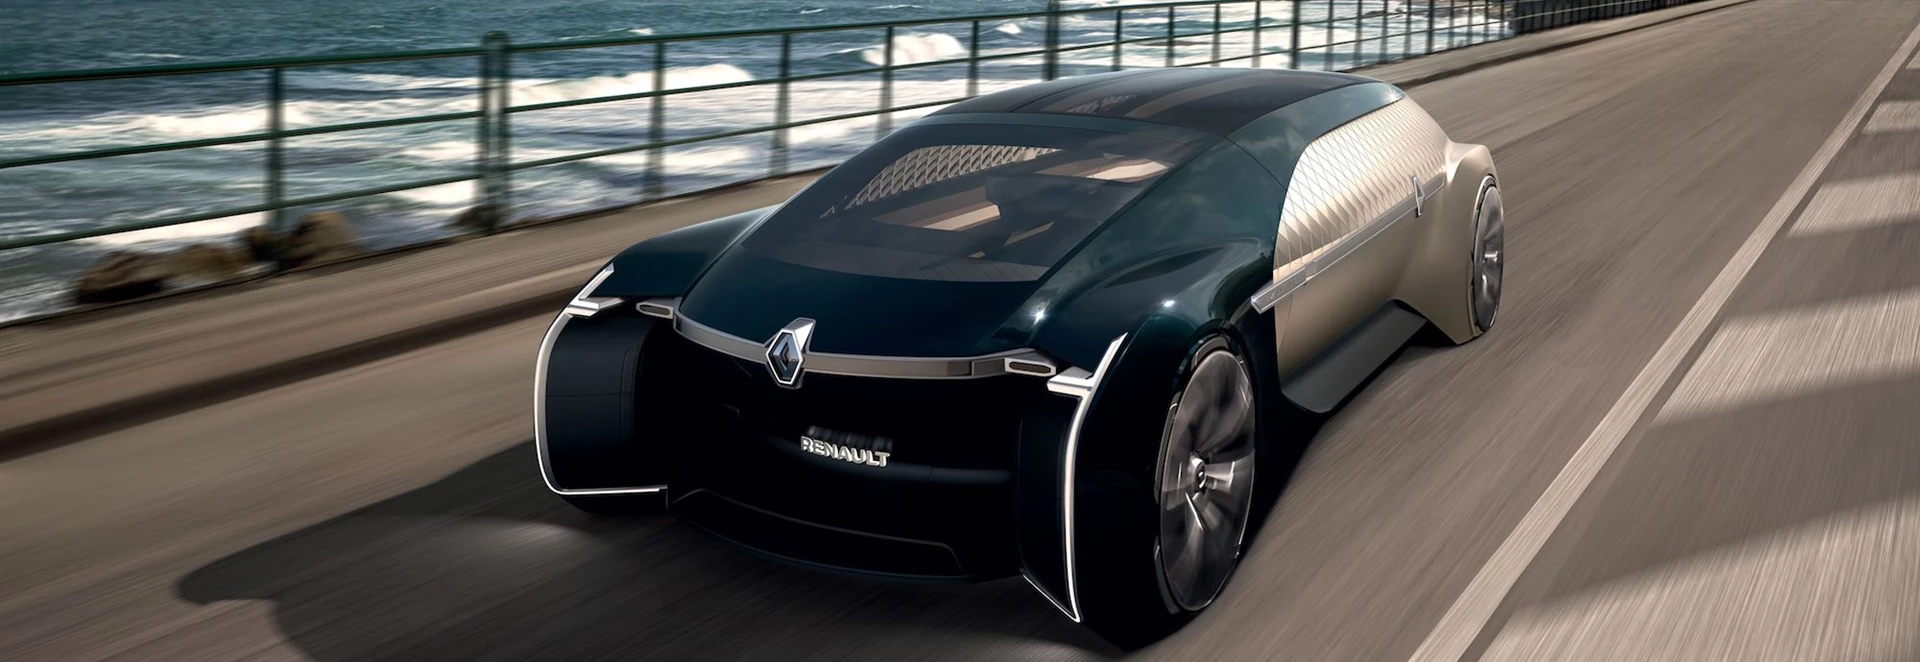 Renault reveals EZ-Ultimo luxury autonomous concept